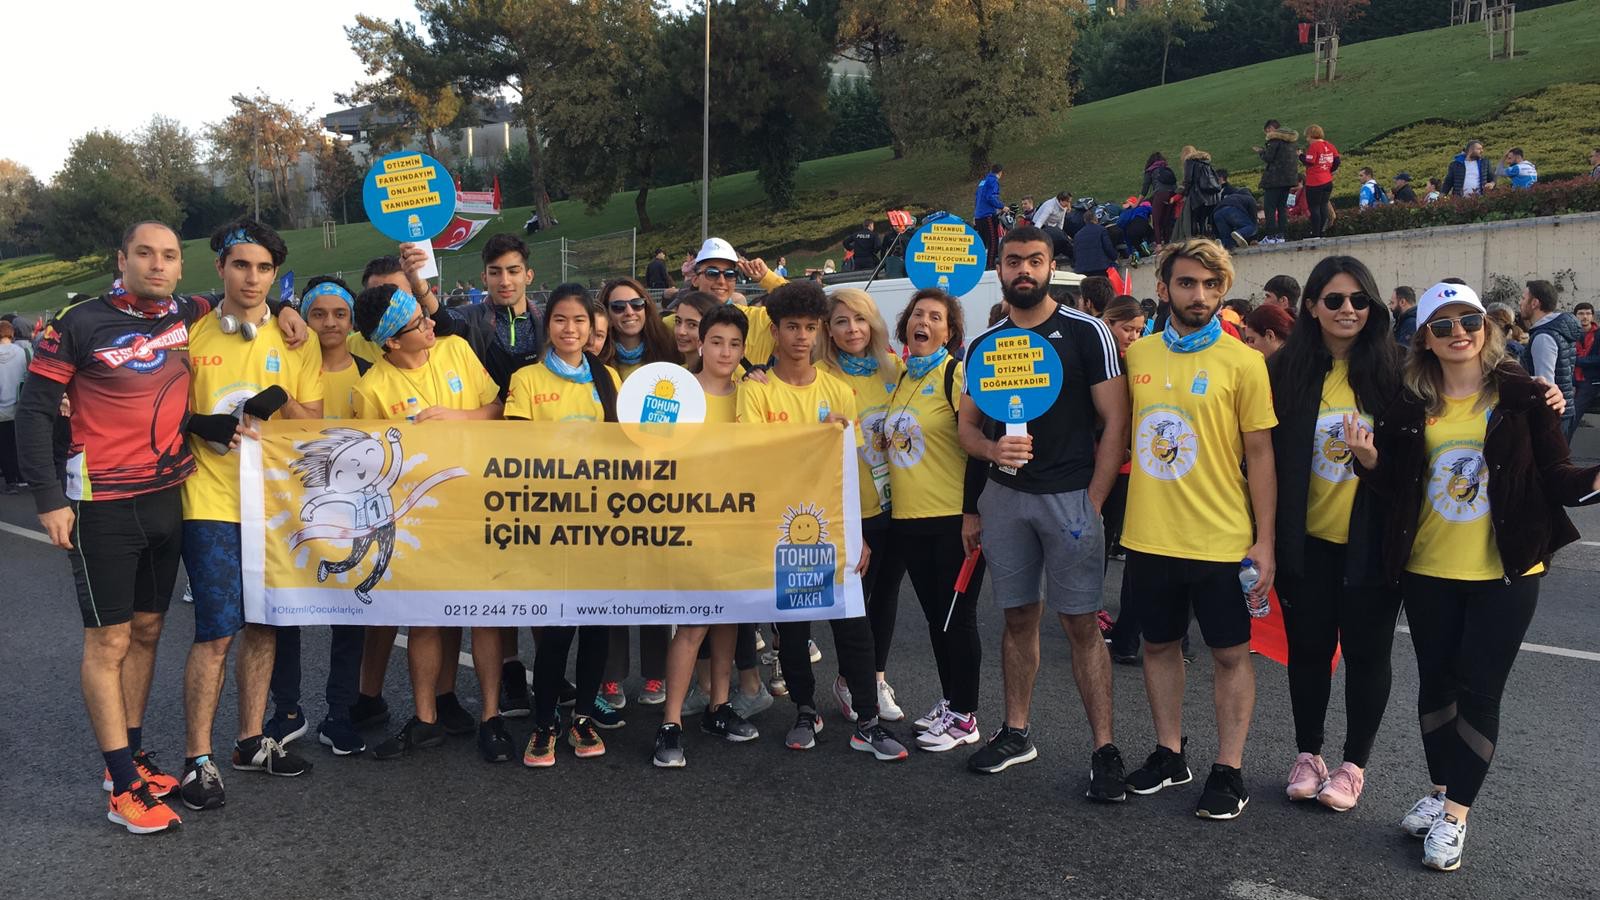 İstanbul Maratonu’nda Otizmli Çocuklara Büyük Destek